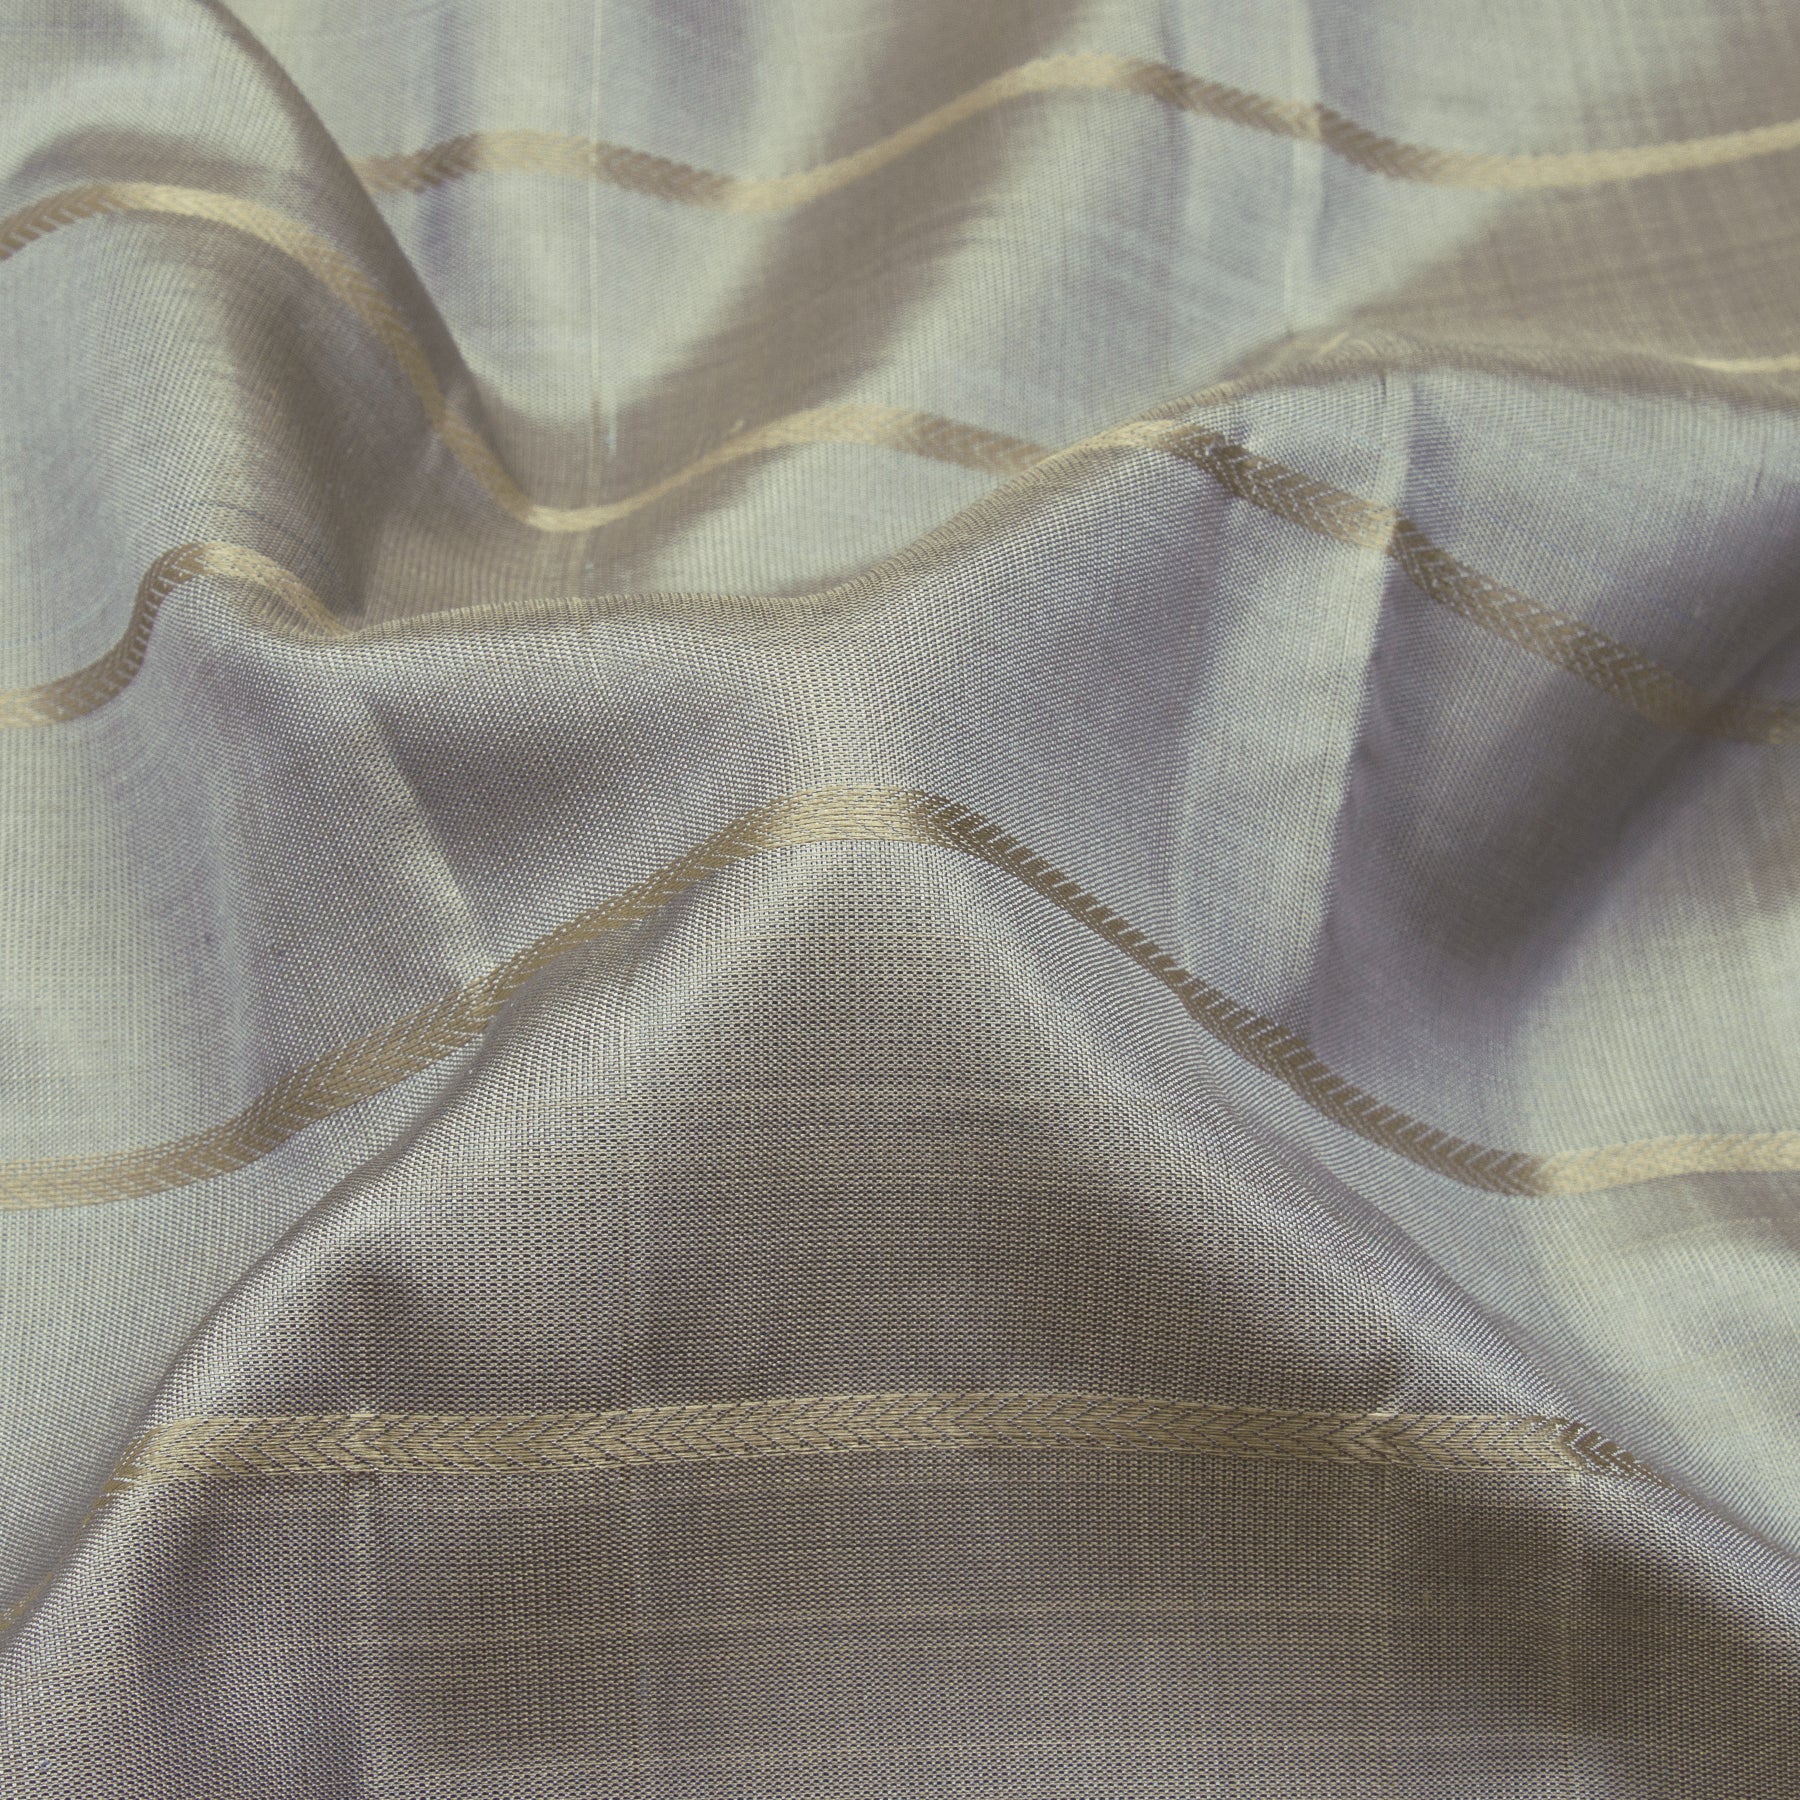 Kanakavalli Kanjivaram Silk Sari 23-600-HS001-13279 - Fabric View